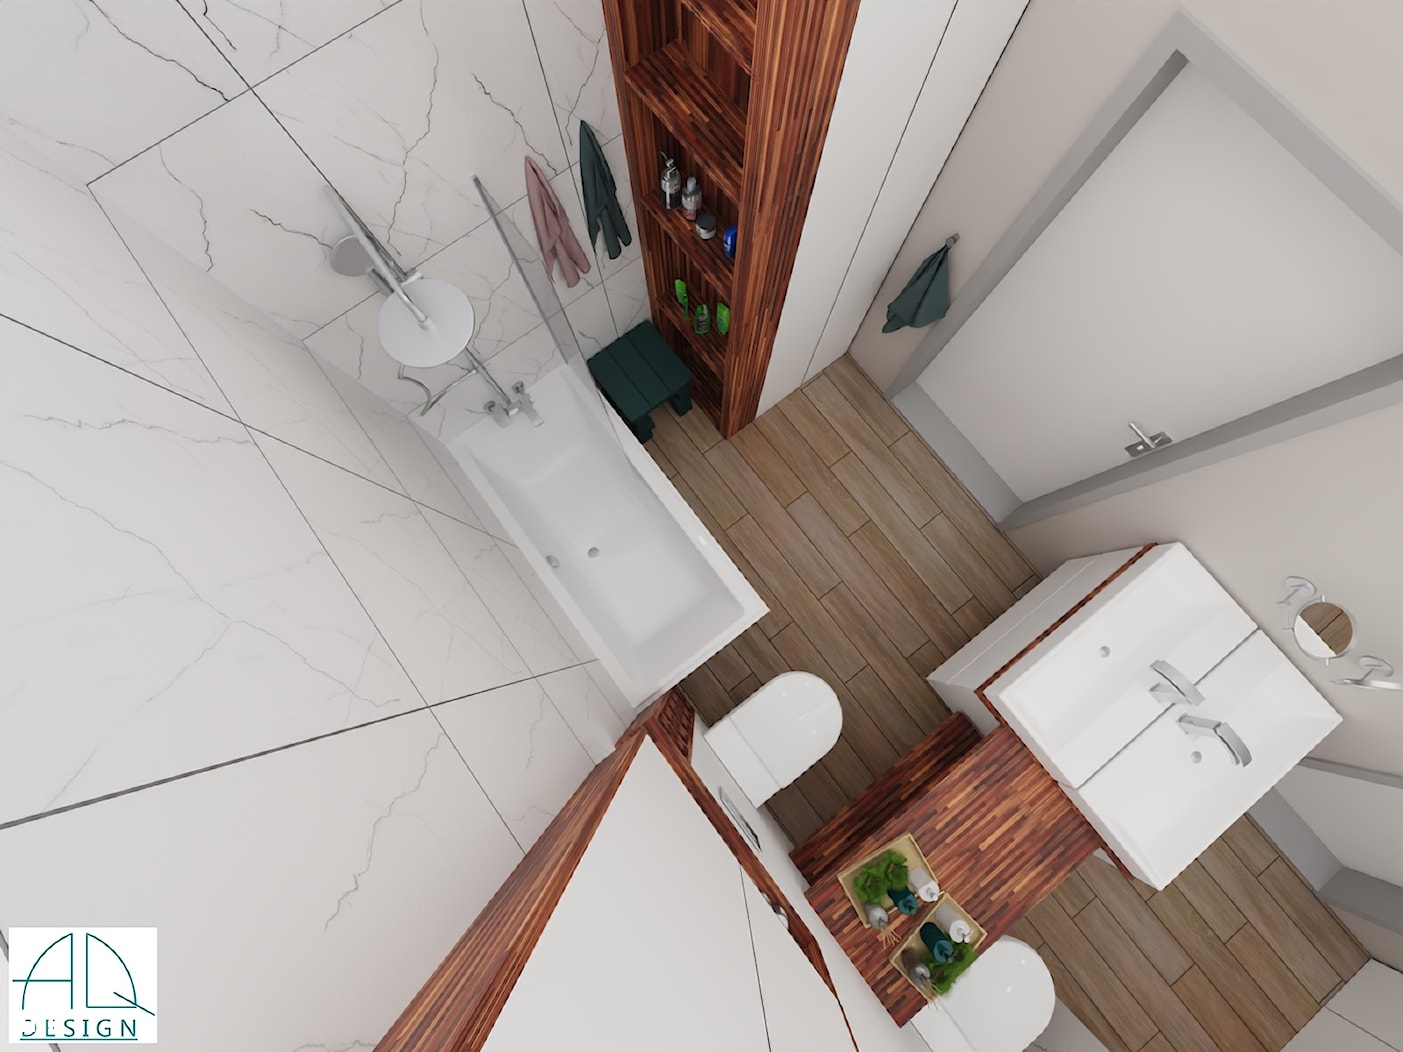 projekt łazienki ok 5m2 - ver.2 (wiosna 2020) - Łazienka, styl nowoczesny - zdjęcie od AQ Design - Homebook